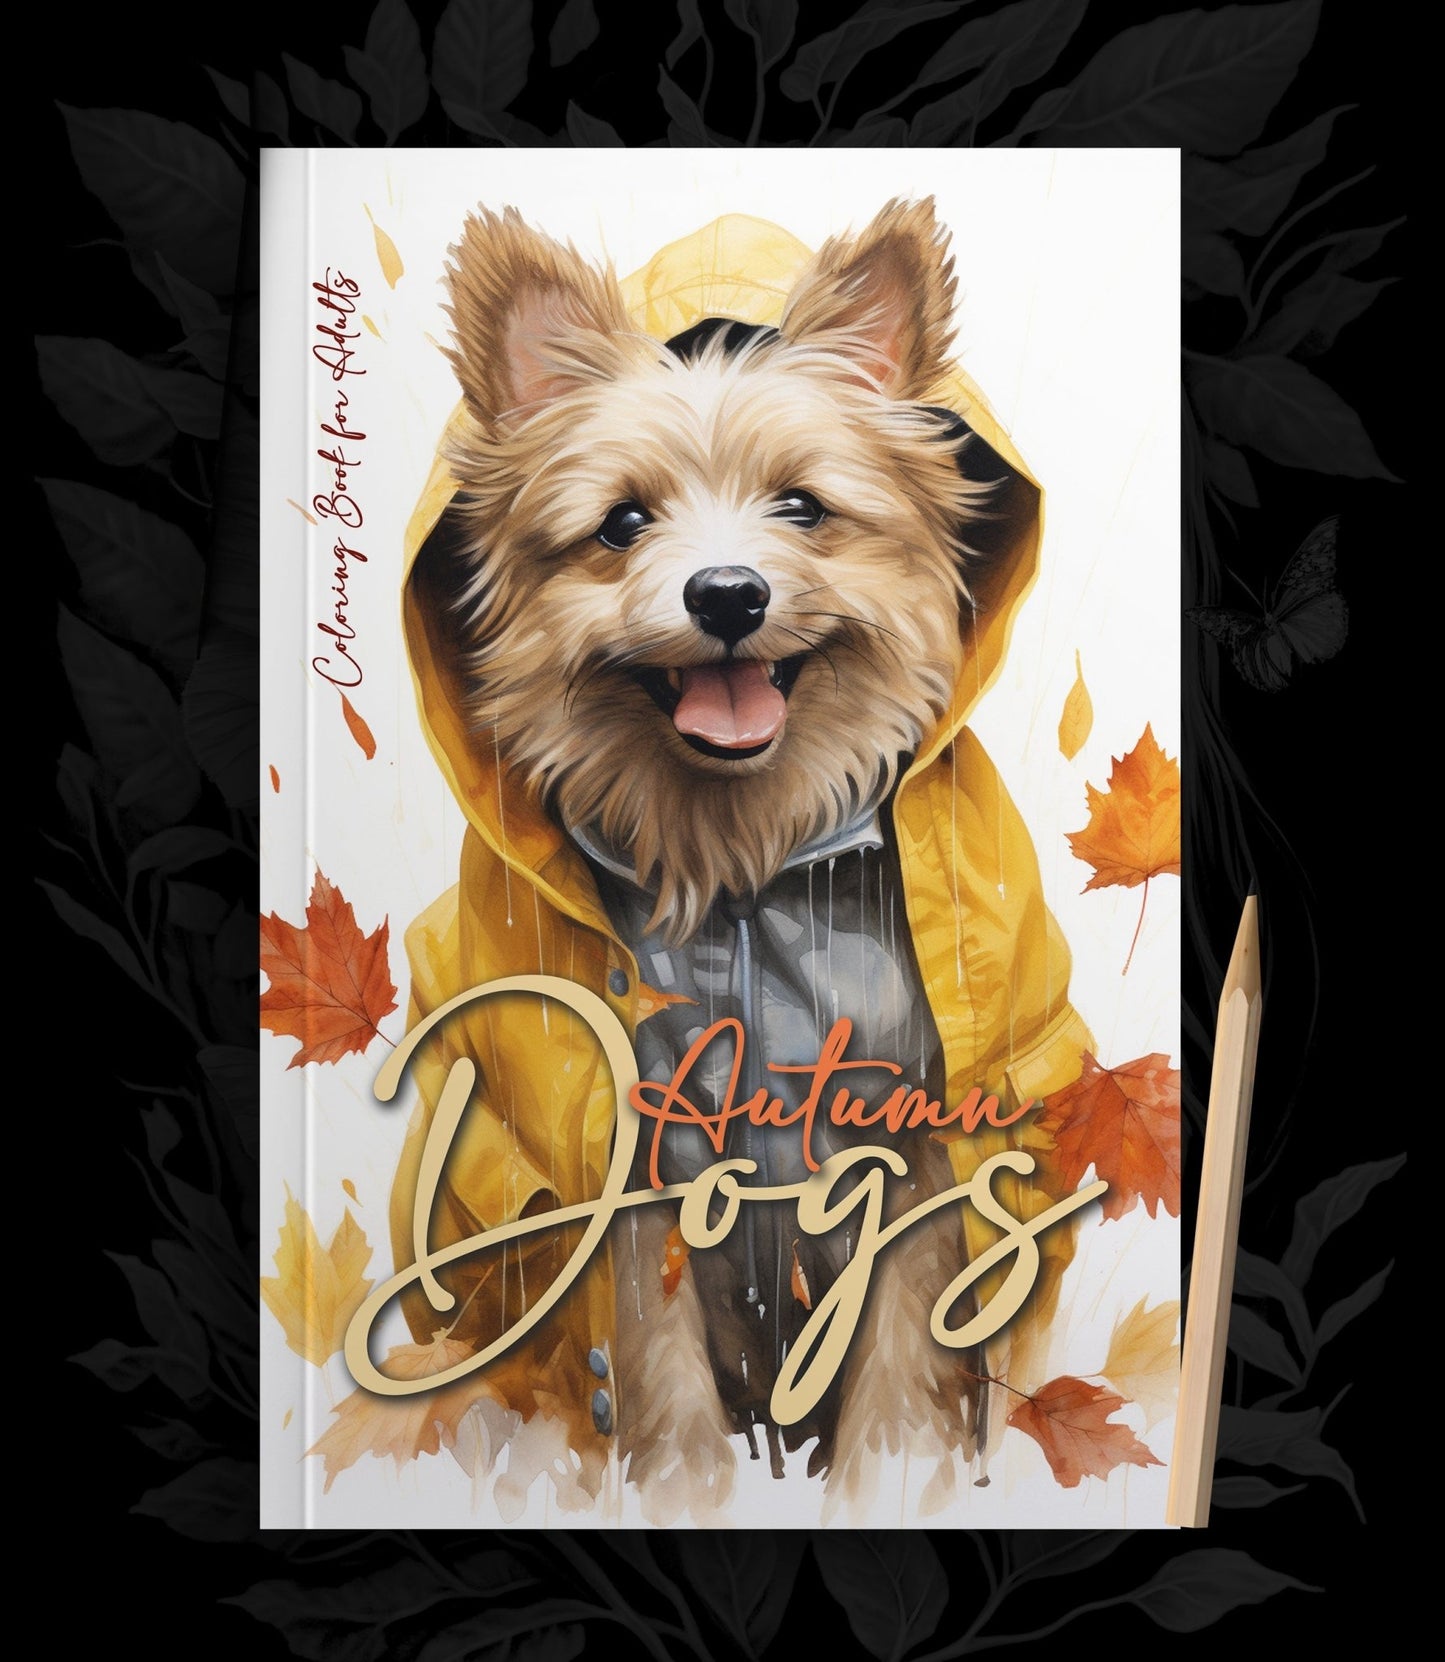 Herbst Hunde Malbuch Graustufen (Digital) - Monsoon Publishing